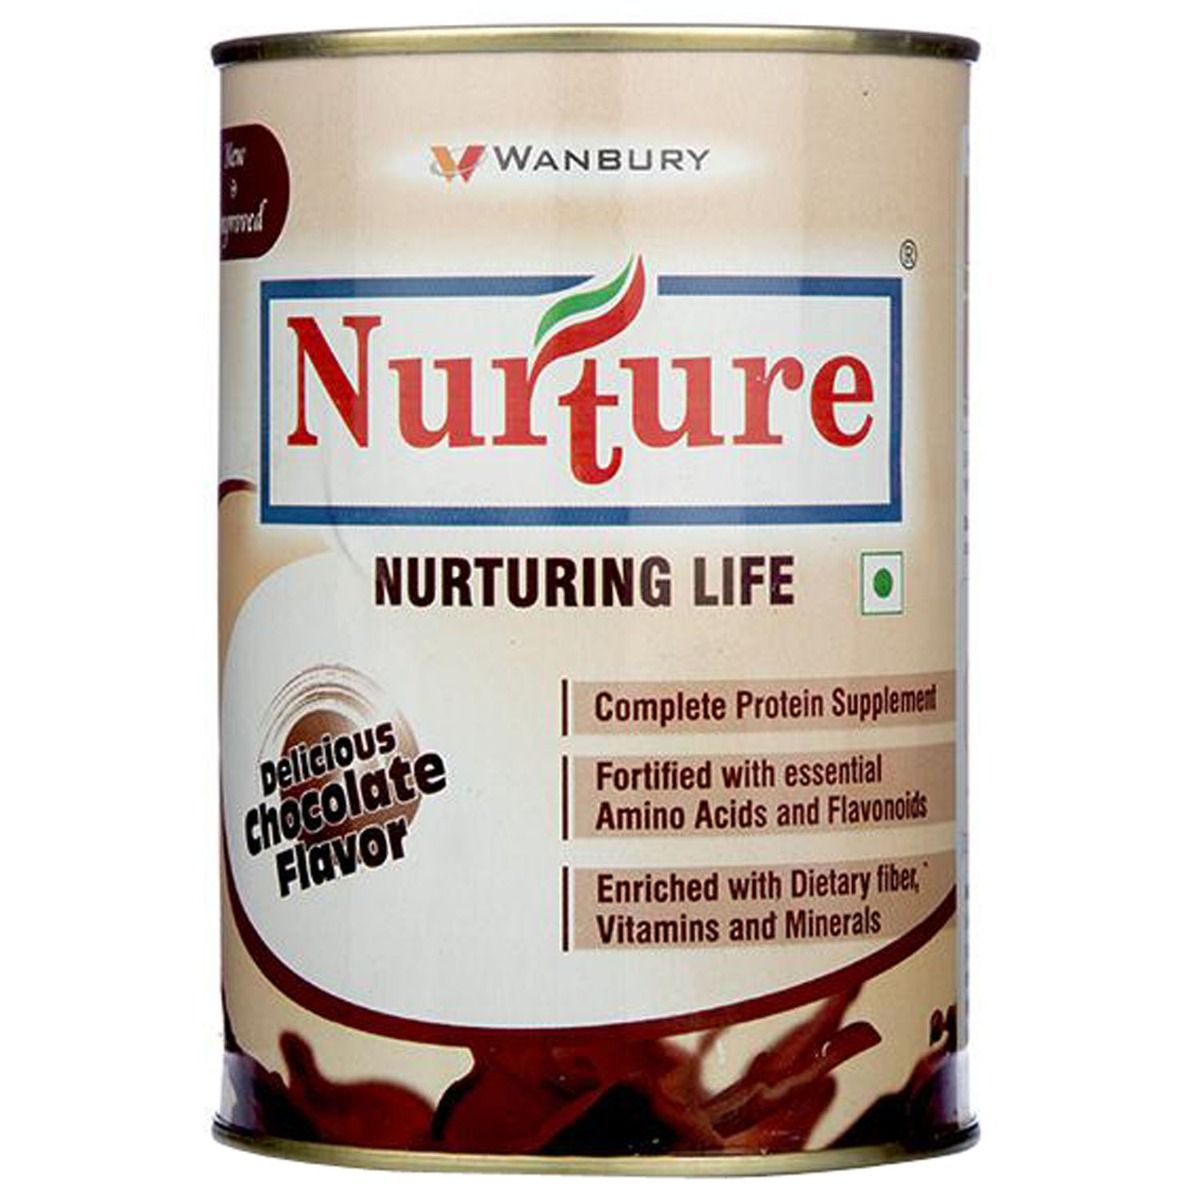 Nurture Delicious Chocolate Flavoured Powder, 200 gm, Pack of 1 